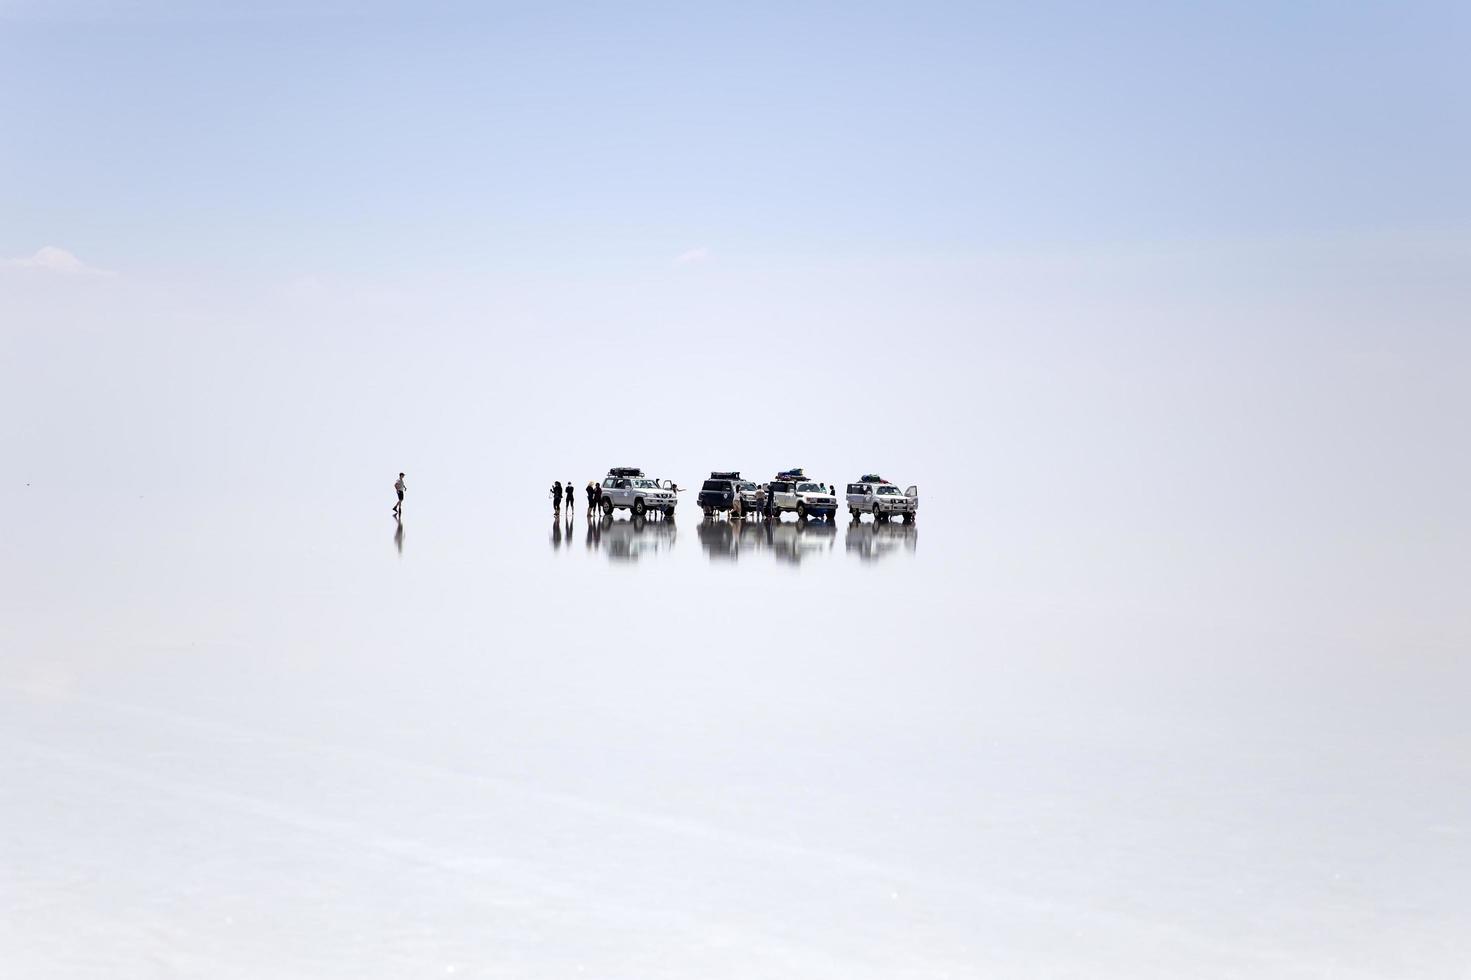 salar de uyuni, bolivie, 13 janvier 2018 - expédition au salar de uyuni en bolivie. c'est le plus grand désert de sel au monde. photo